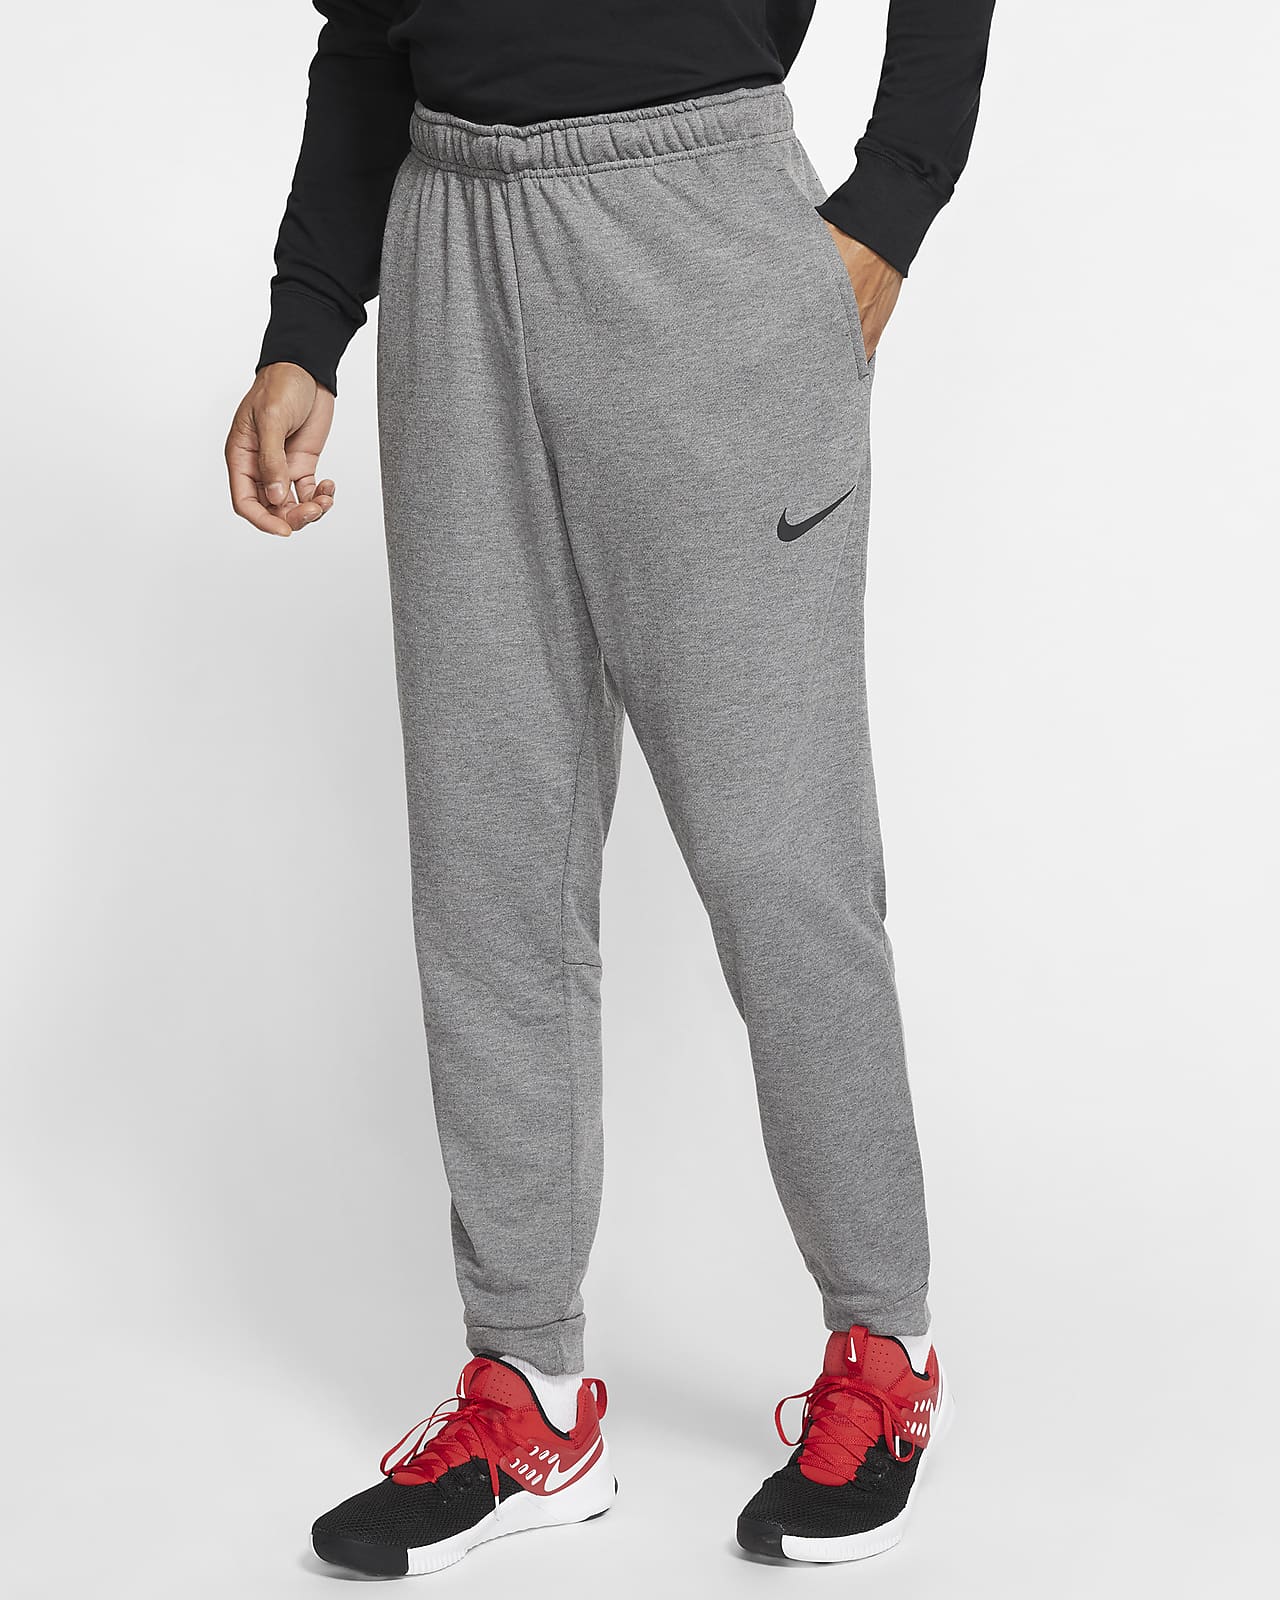 toewijzen flexibel Pijnboom Nike Dri-FIT Men's Fleece Training Pants. Nike.com